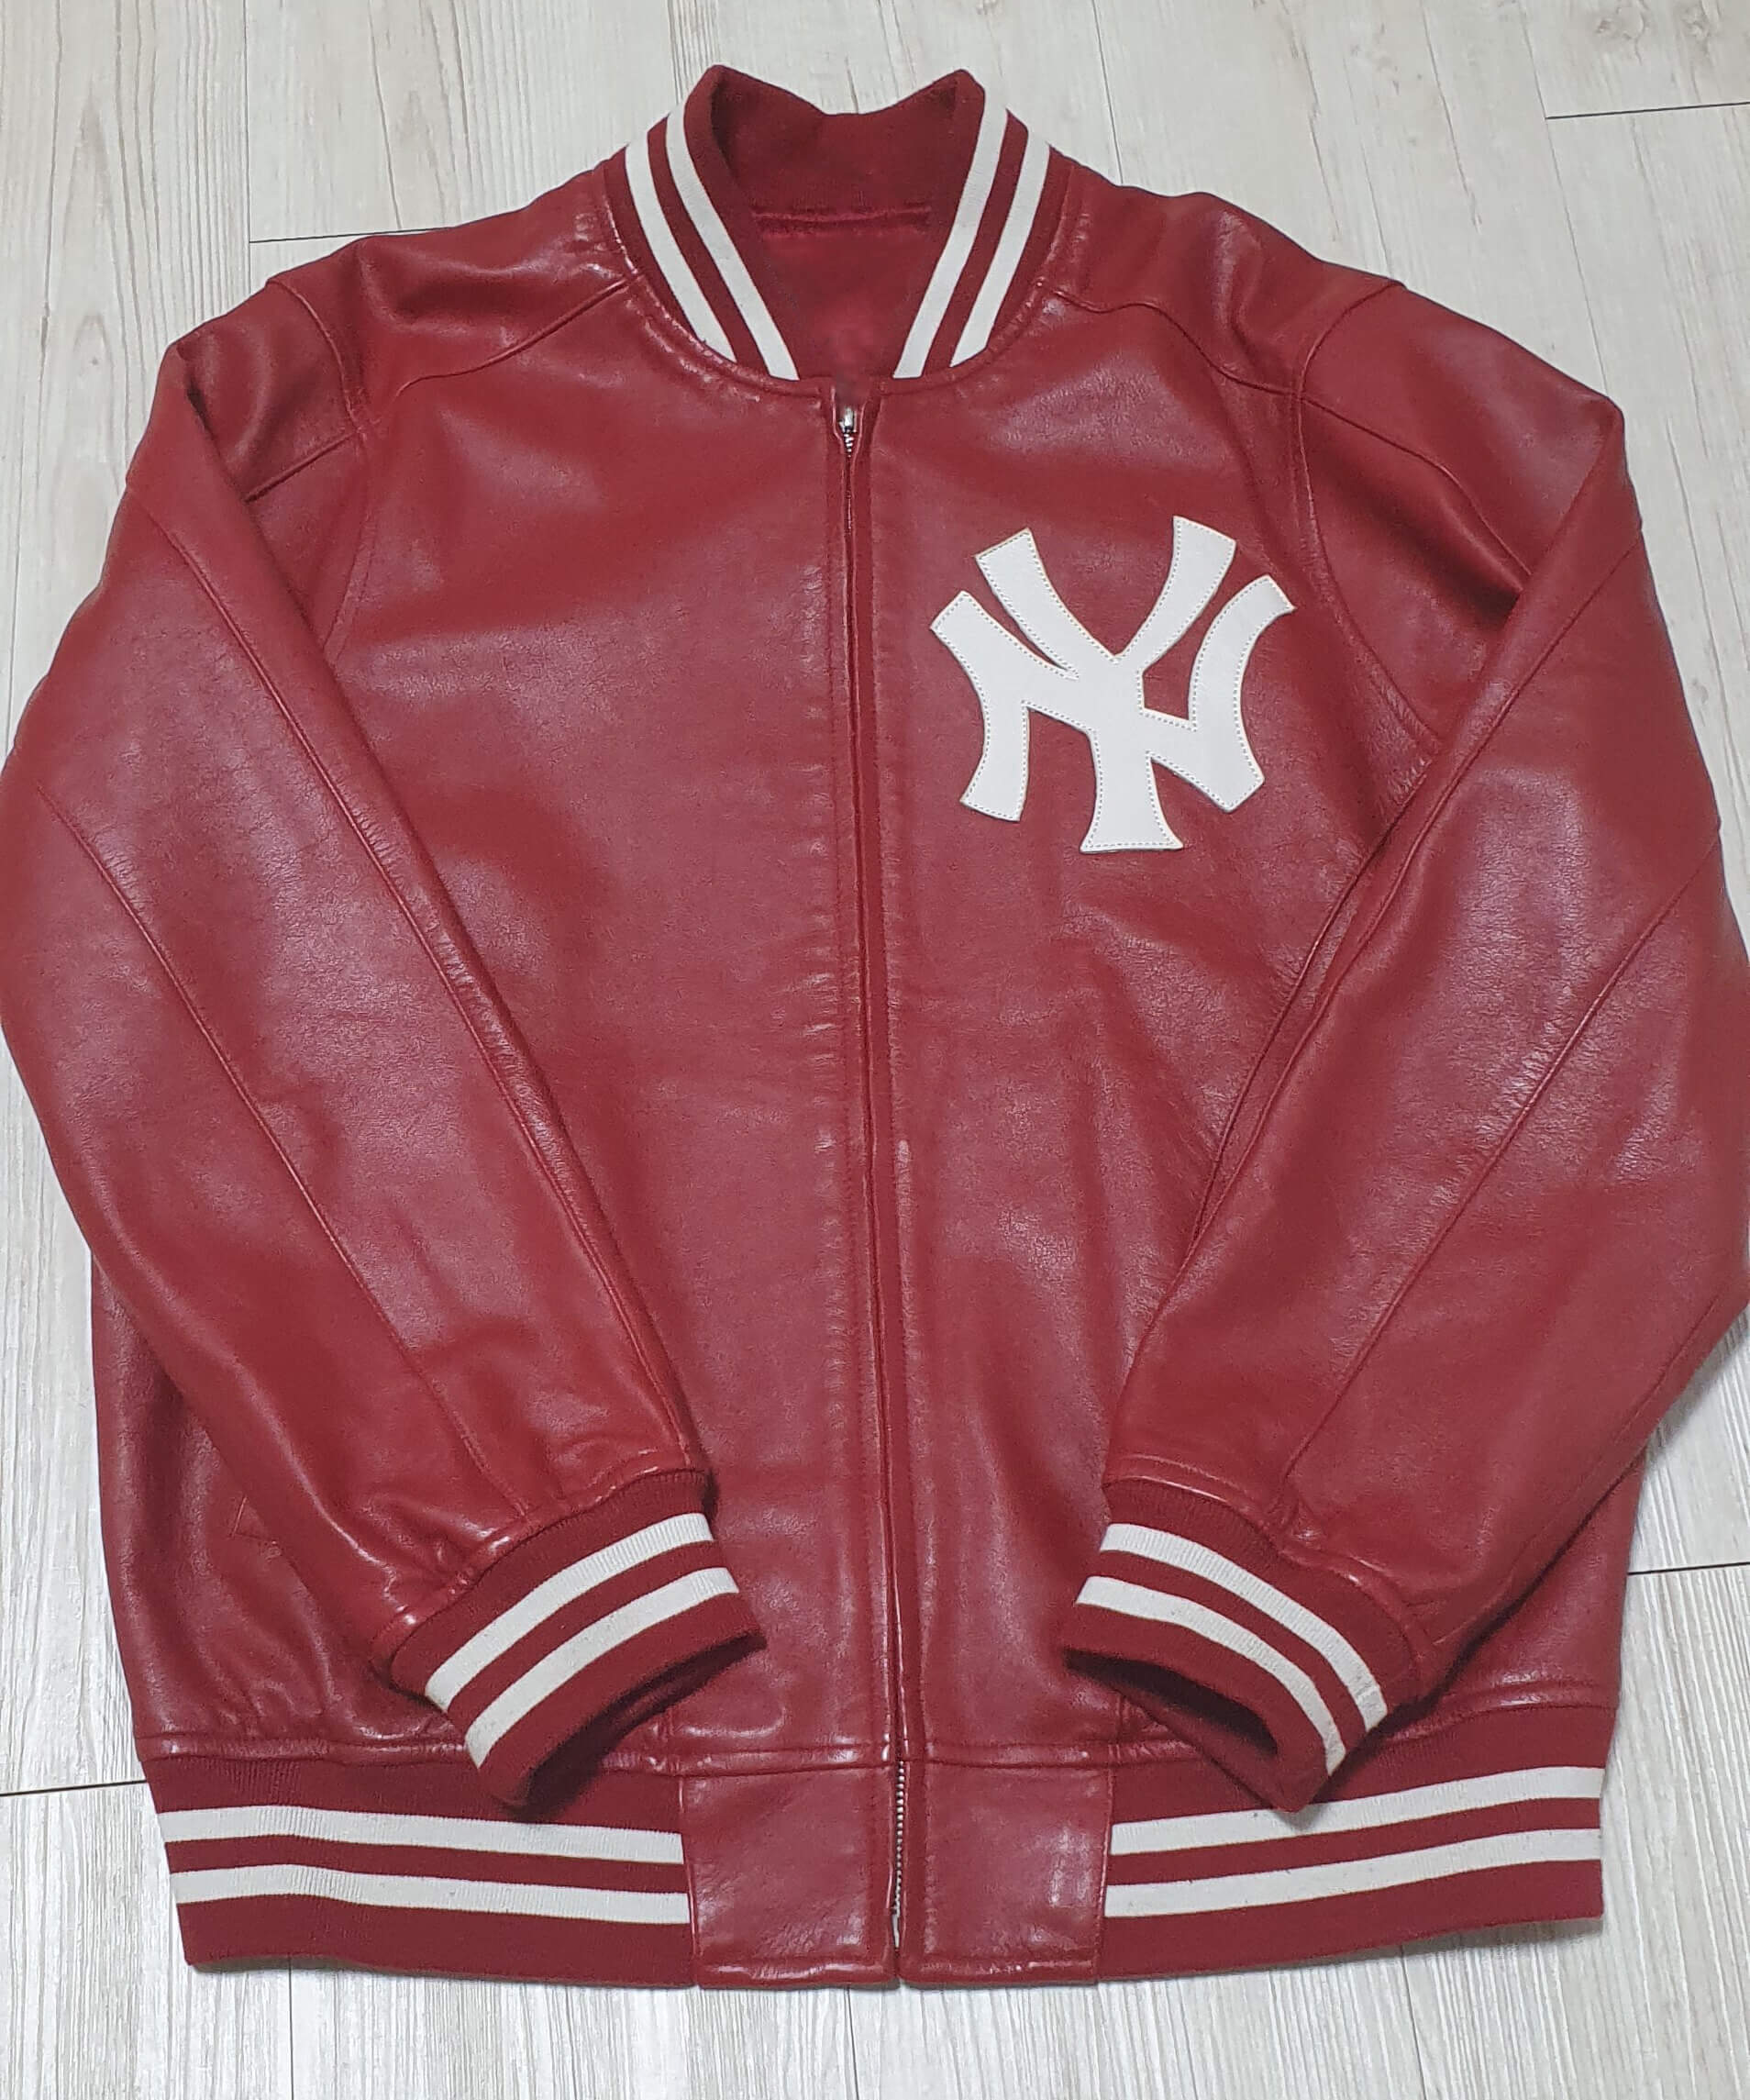 Supreme NY Yankees Red Leather Varsity Jacket - Maker of Jacket